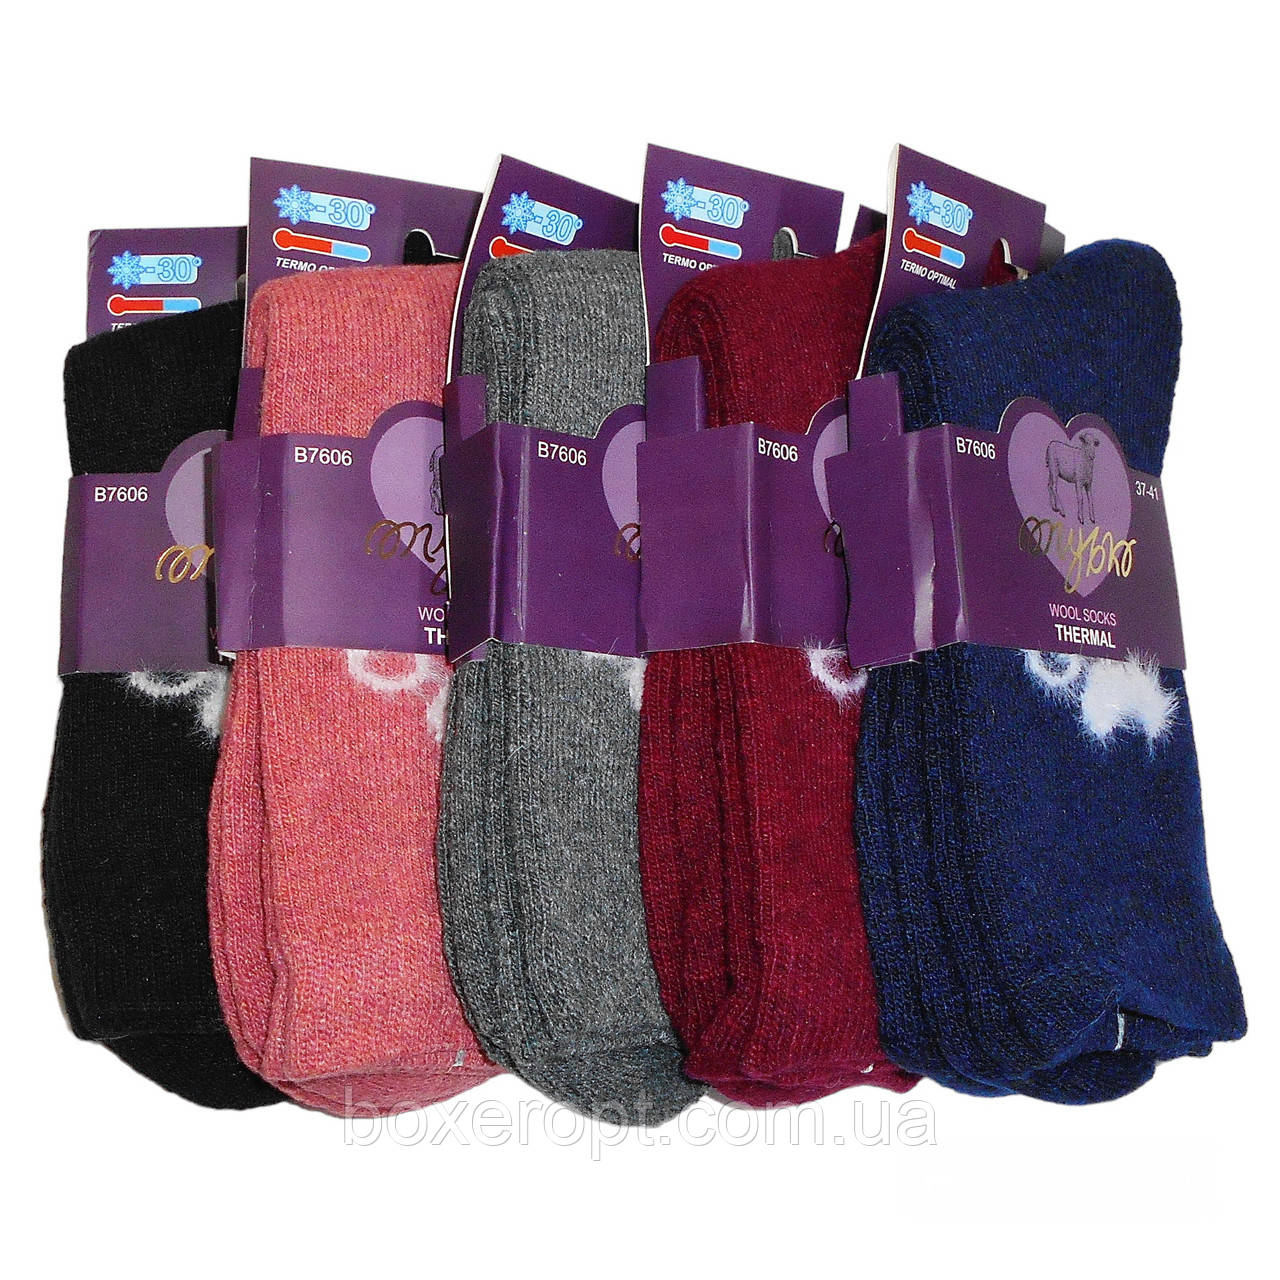 Жіночі шерстяні шкарпетки з махрою Голубка - 34.00 грн./пара (No.B7606)